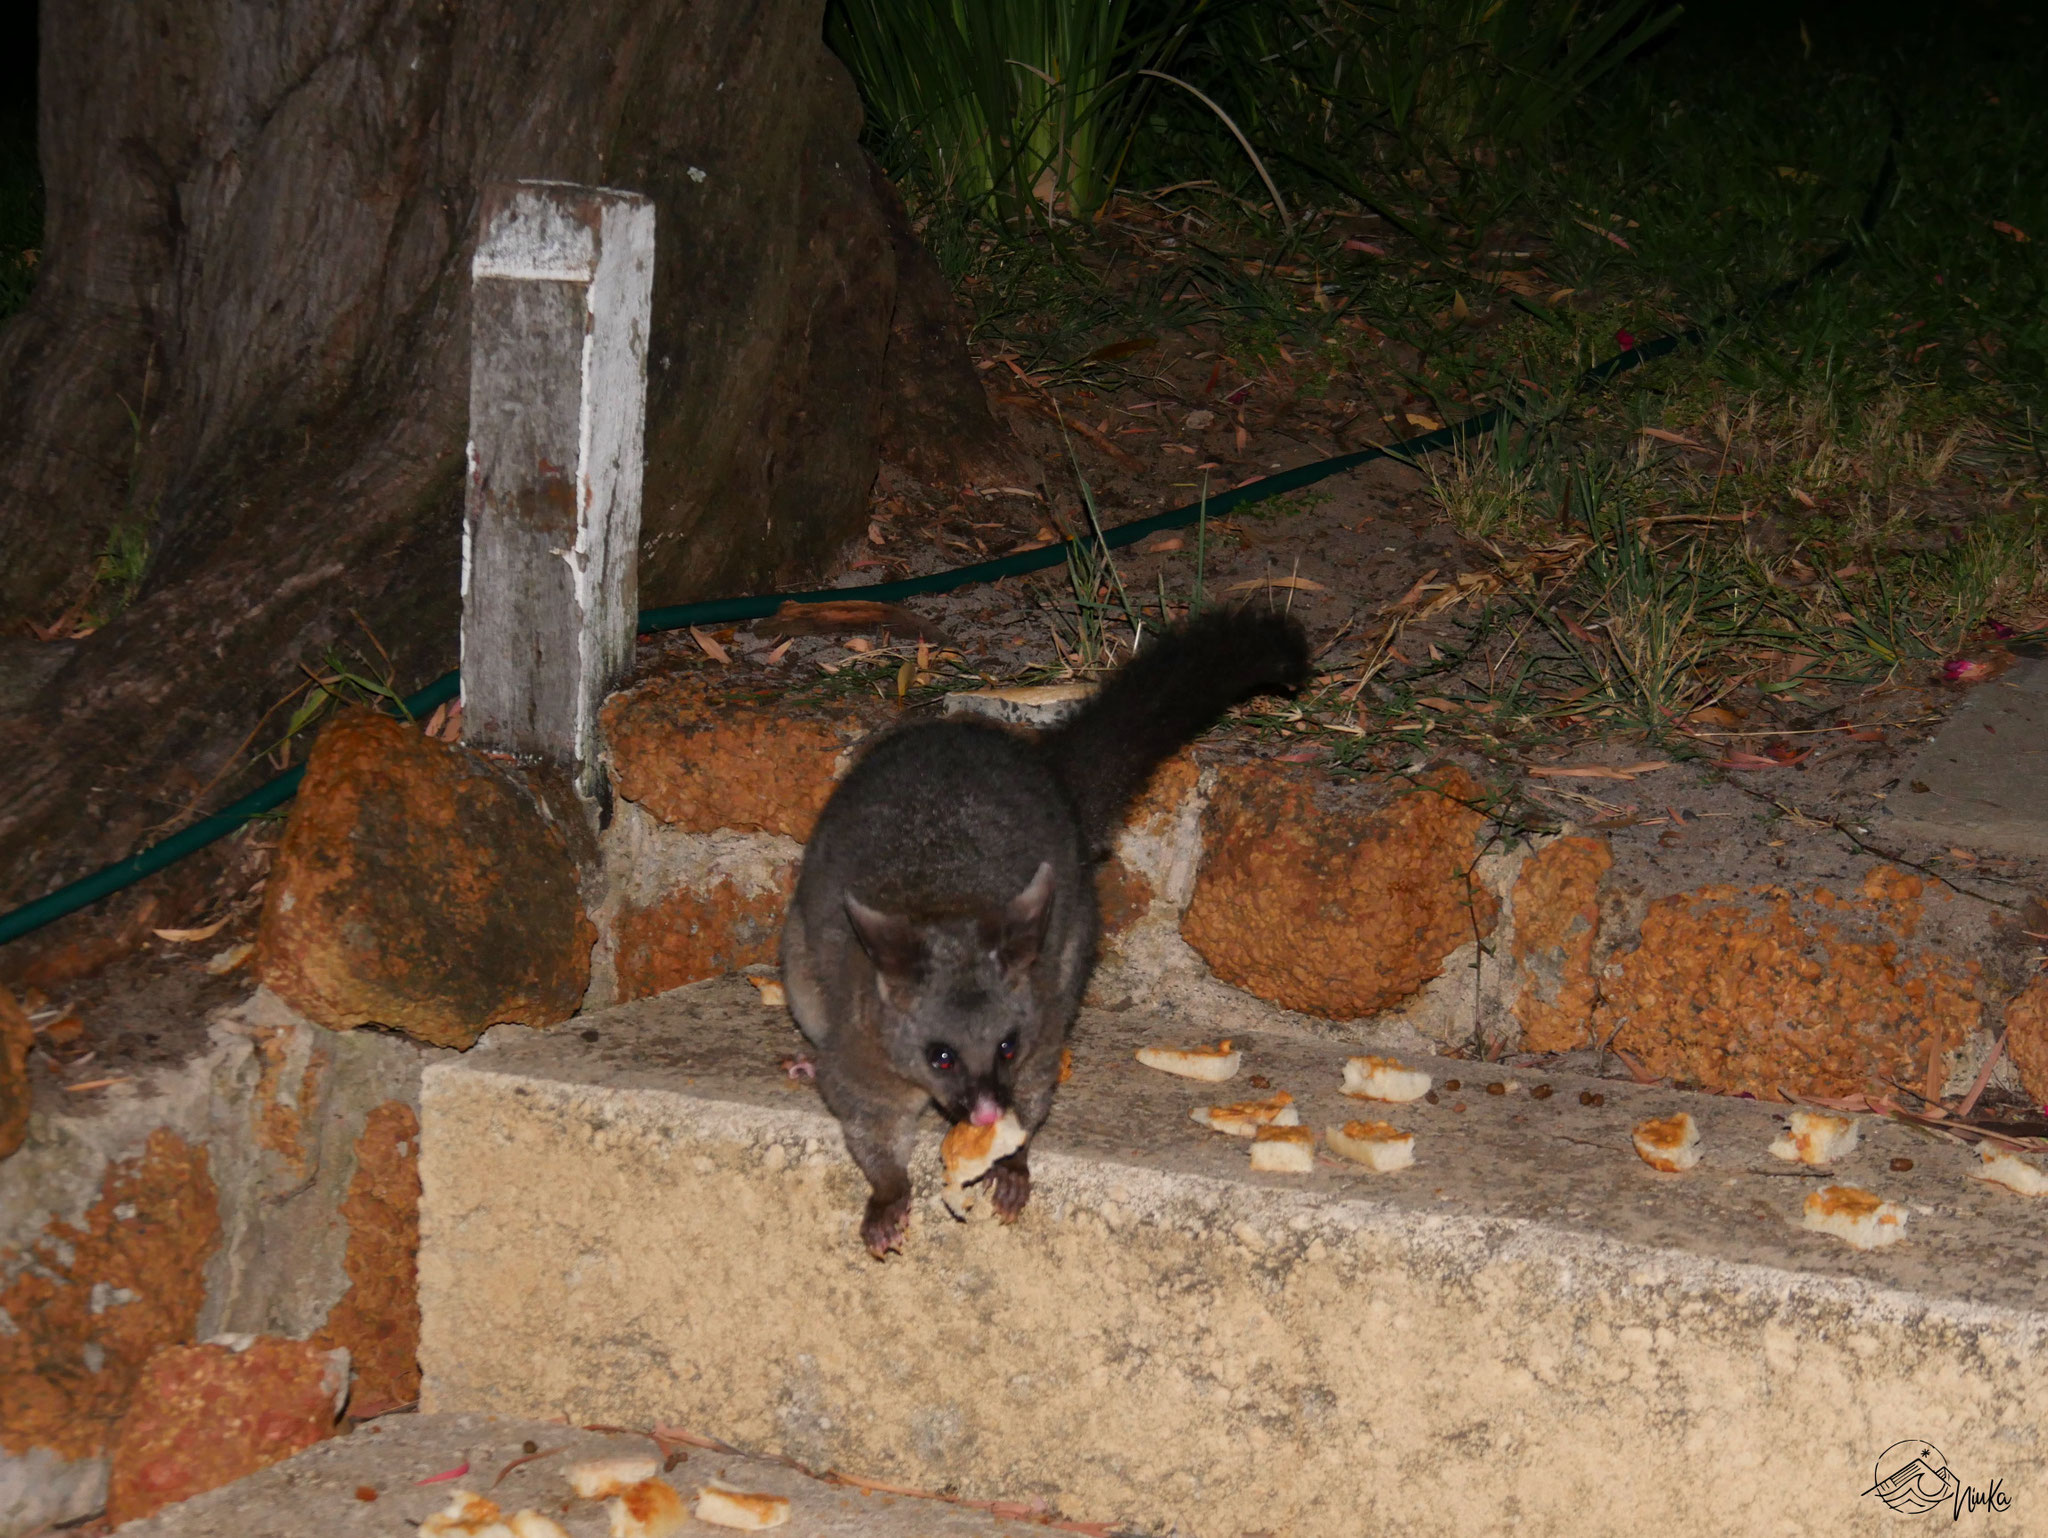 Possum feeding